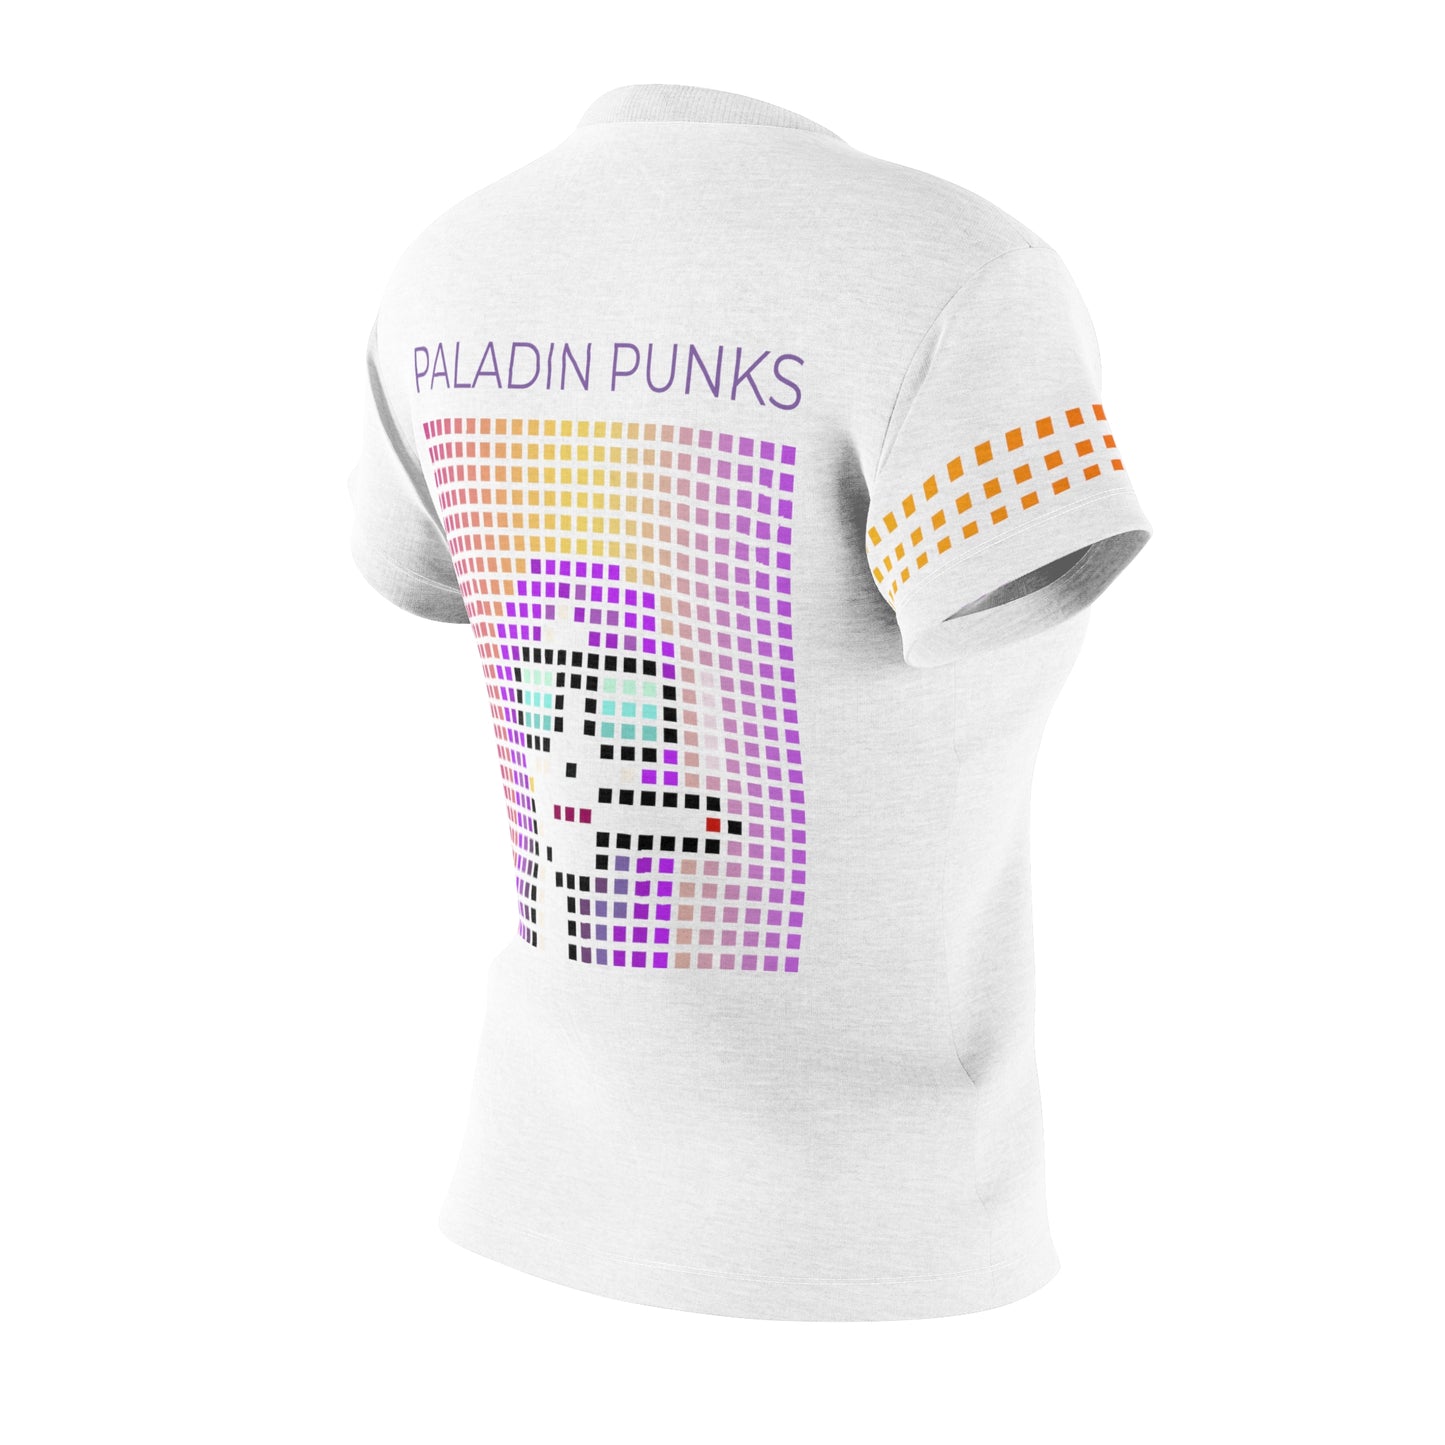 Paladin Punks White T-shirt Short Sleeve Sublimation Dye